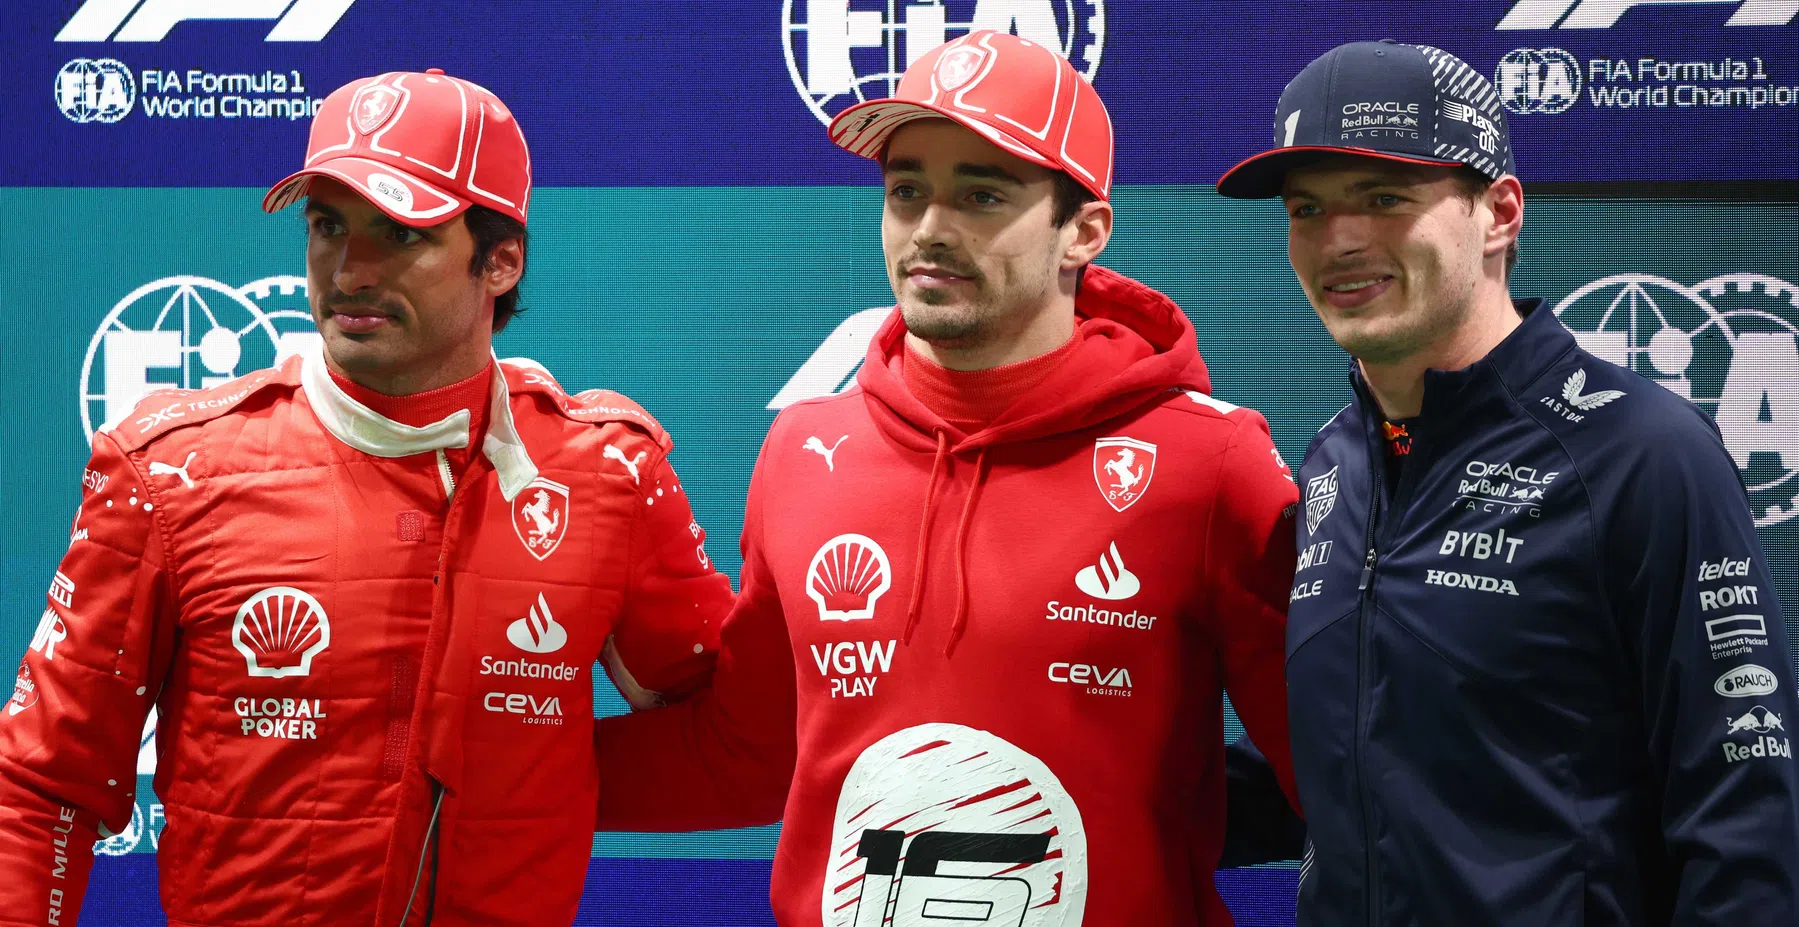 Formación de salida definitiva | Leclerc y Verstappen al frente, Sainz penalizado